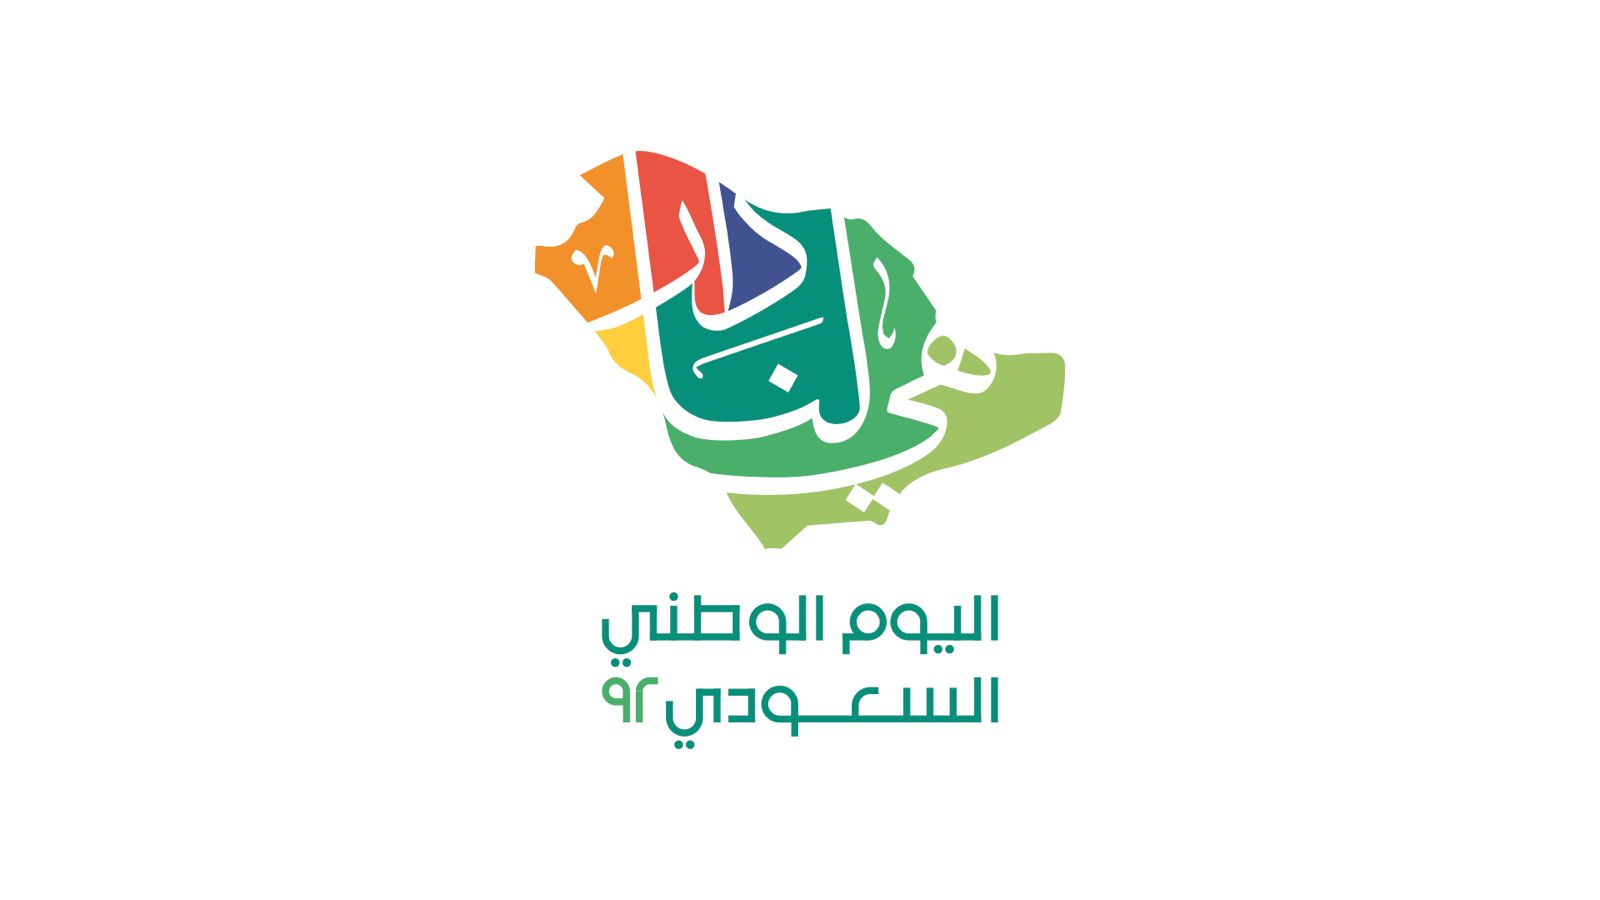 تركي آل الشيخ يطلق برنامجًا ضخمًا للاحتفالات باليوم الوطني السعودي 92